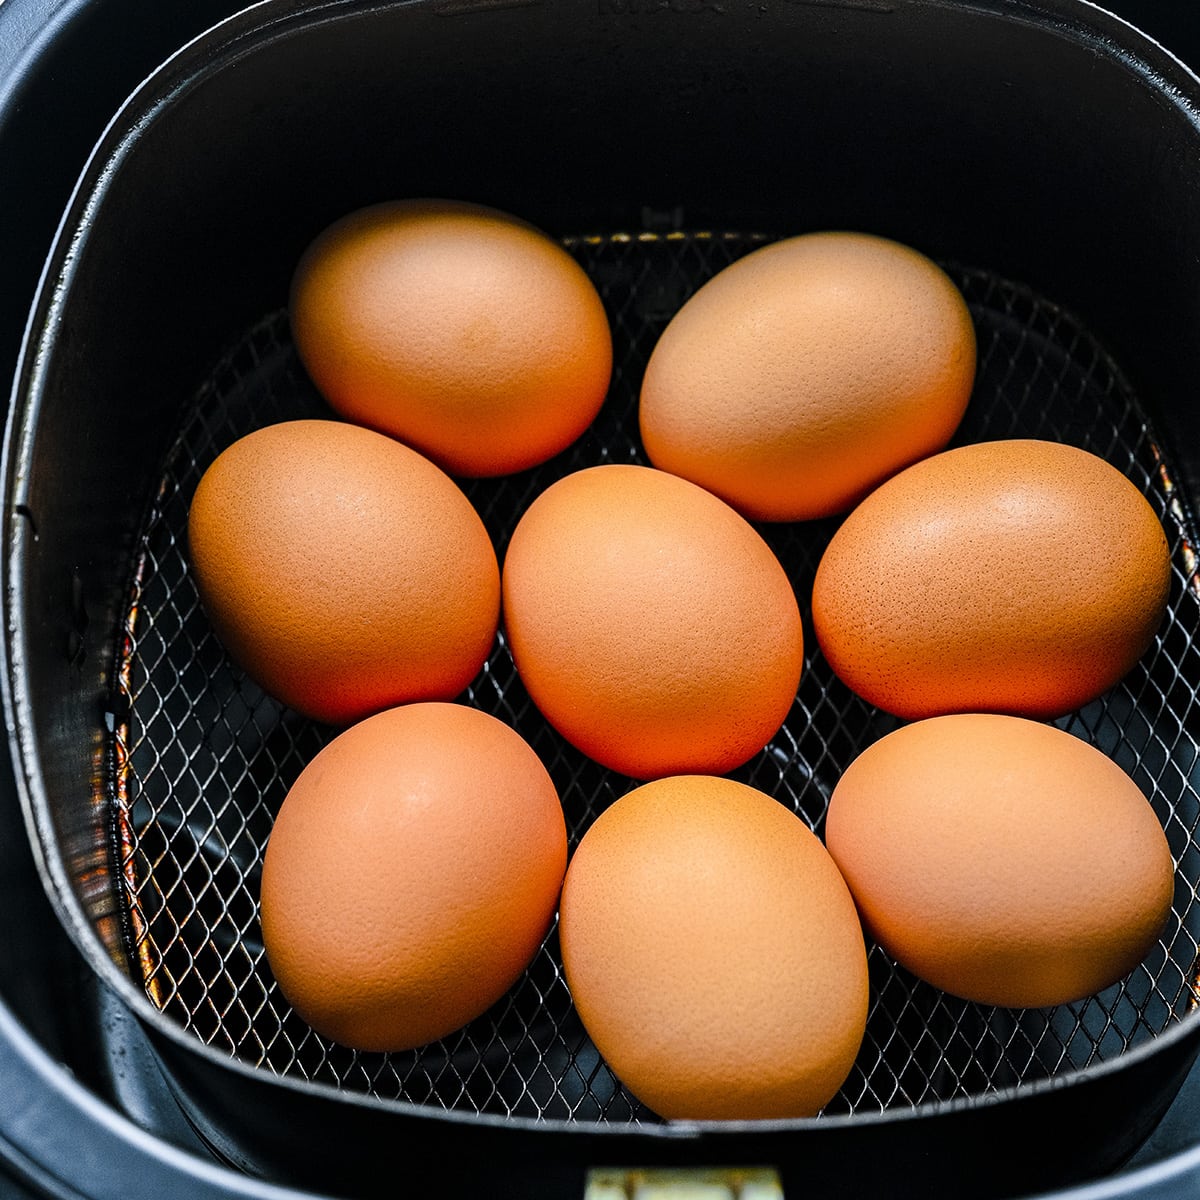 Eggs in air fryer basket.